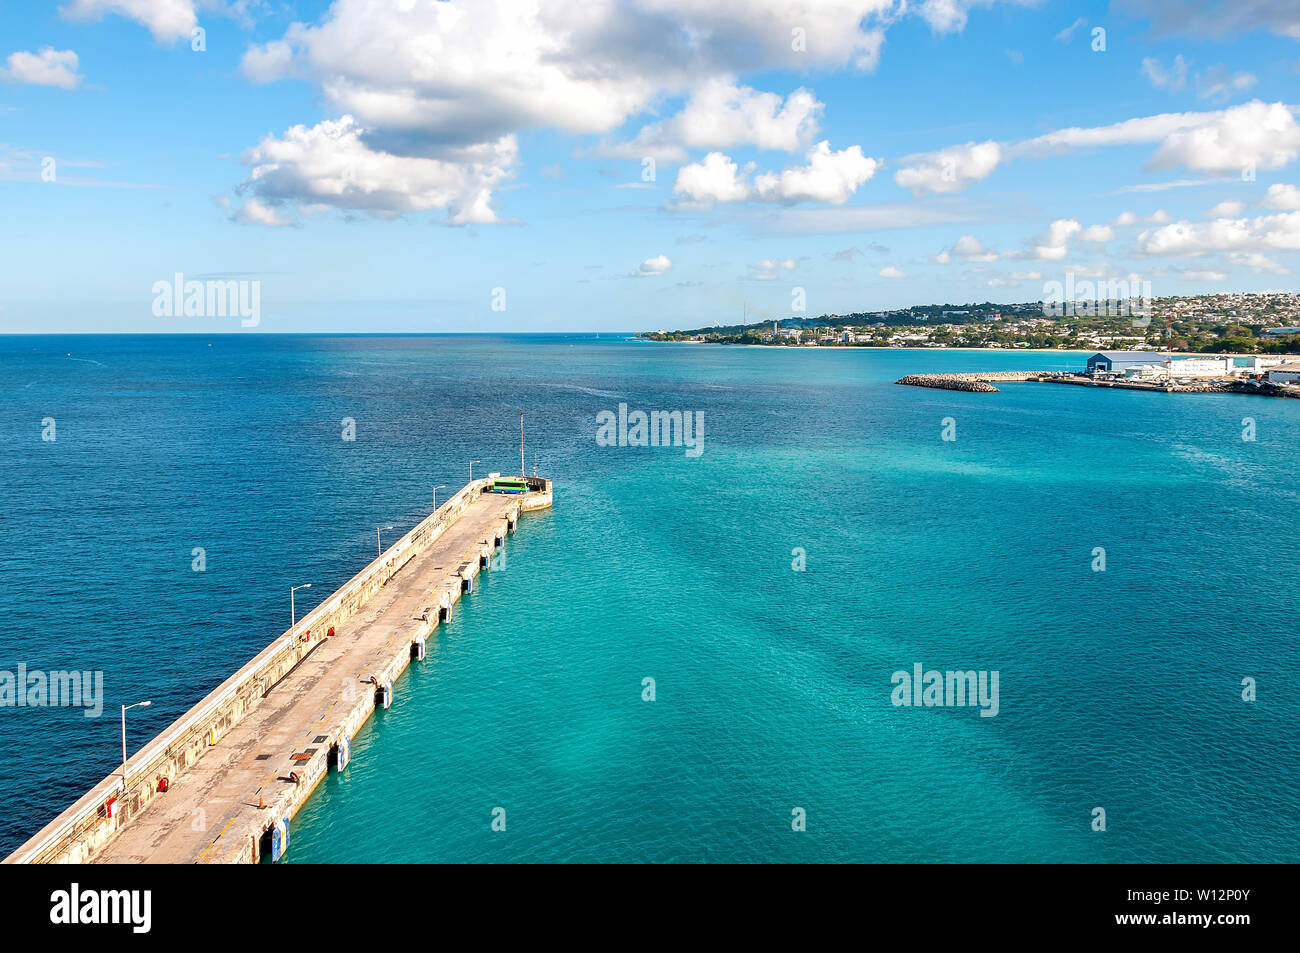 Avis de Bridgetown, Barbade - Tropical Island - mer des Caraïbes - port de croisière et pier Banque D'Images